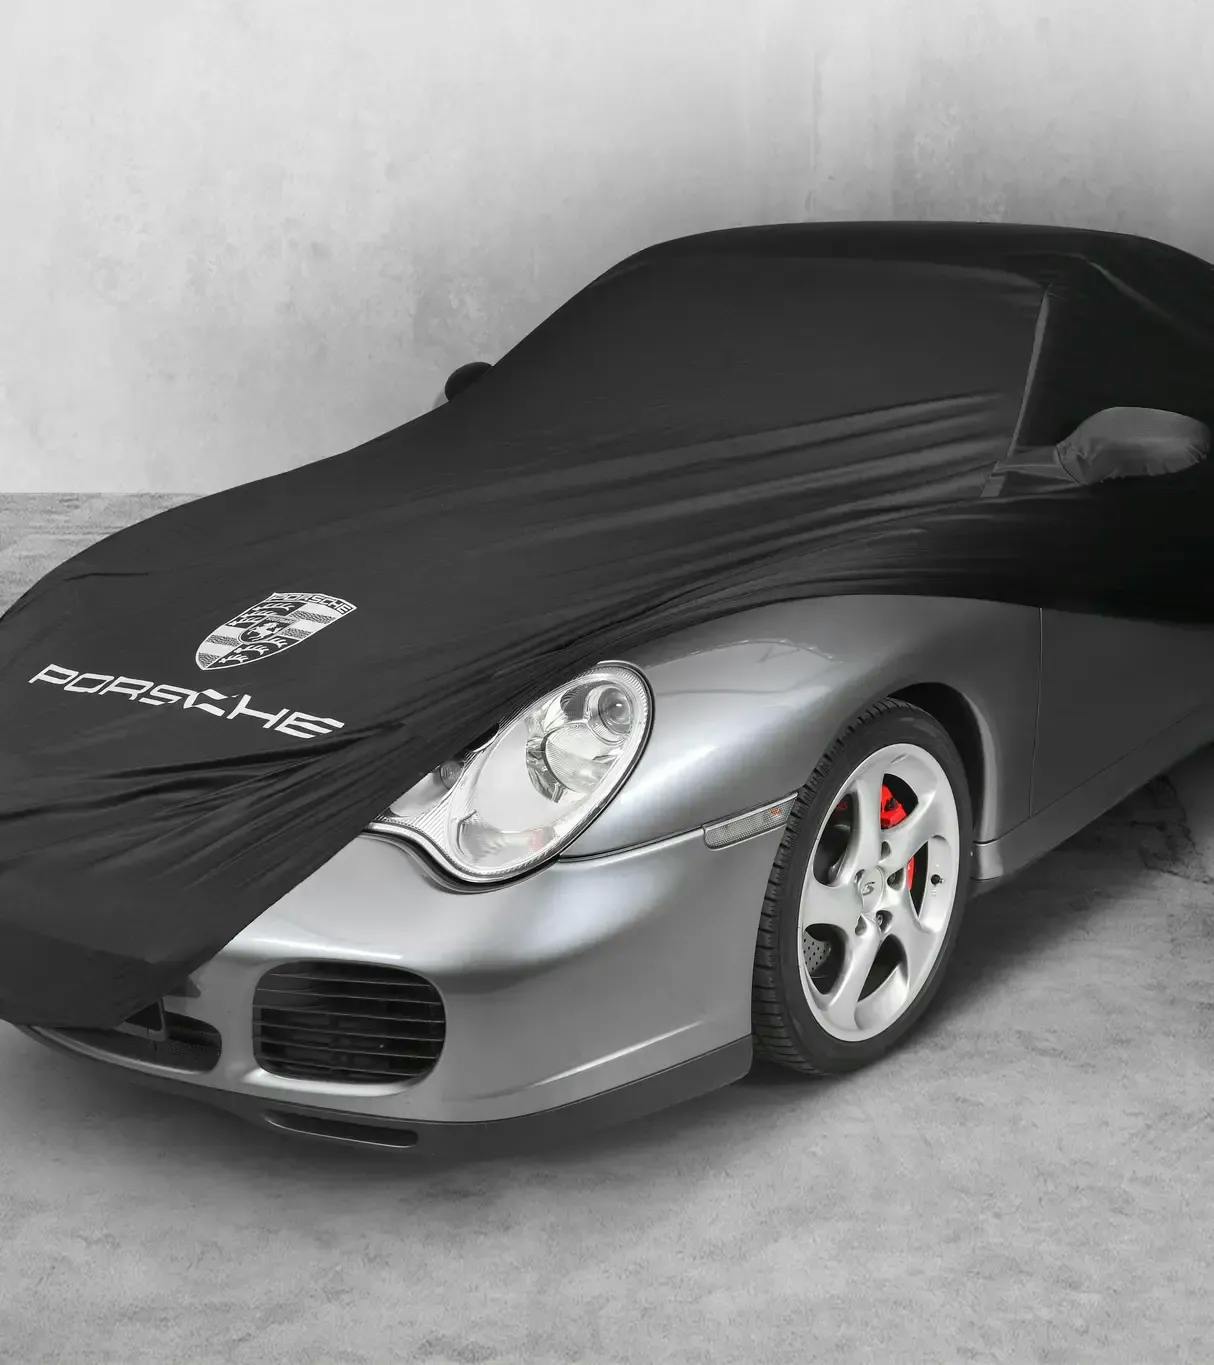 Housse de protection de véhicule noire pour Porsche 996 sans aérokit 2